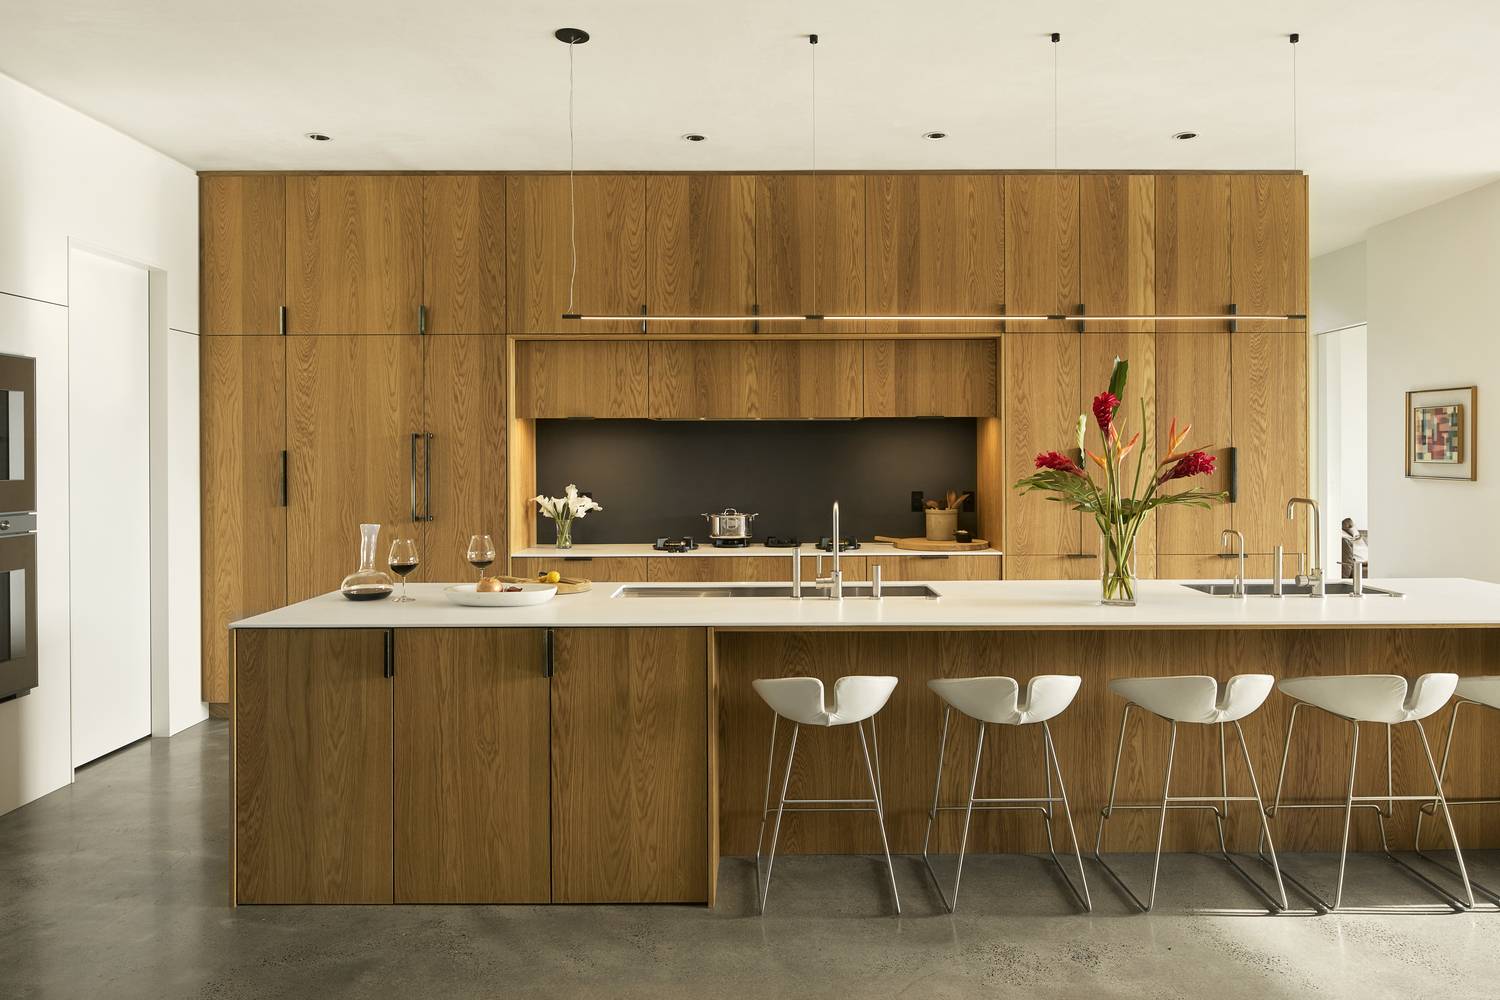 Không gian phòng bếp được thiết kế đơn giản với những màu sắc cơ bản